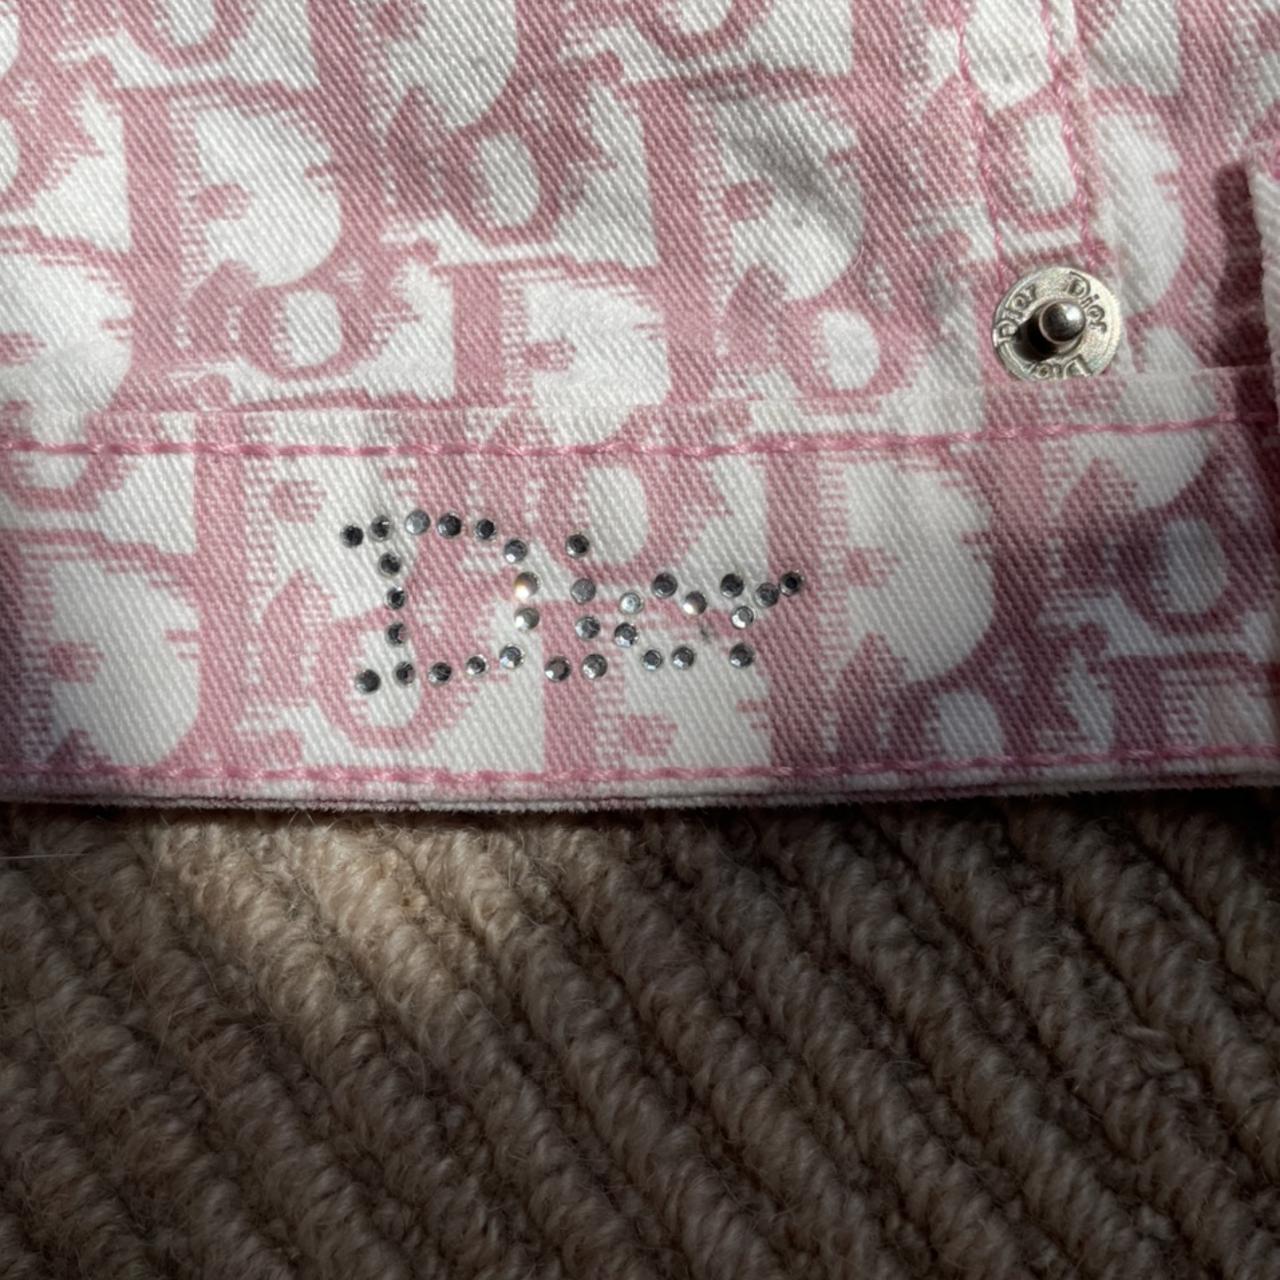 Vintage Christian Dior pink monogram logo pattern - Depop